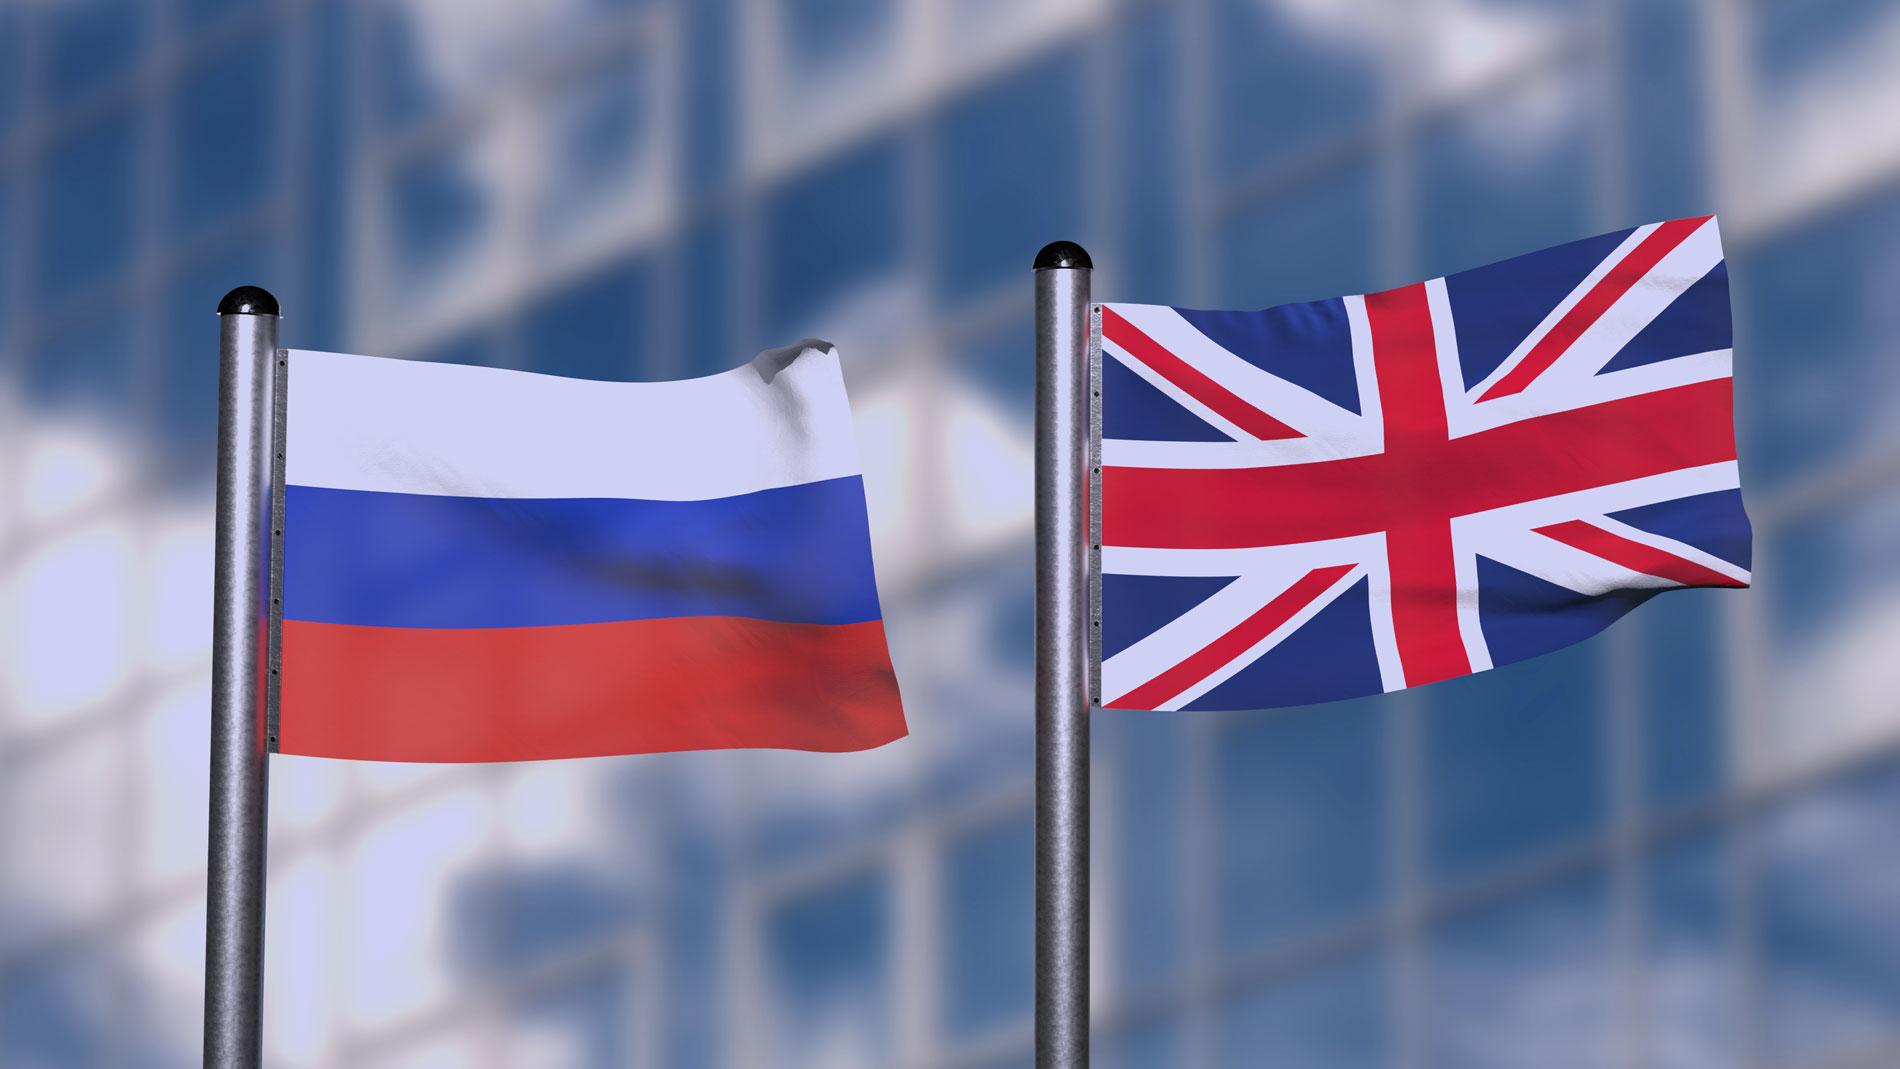 Rusiya və Britaniya arasında gərginlik - Moskva Londonu nə də ittiham edir?   